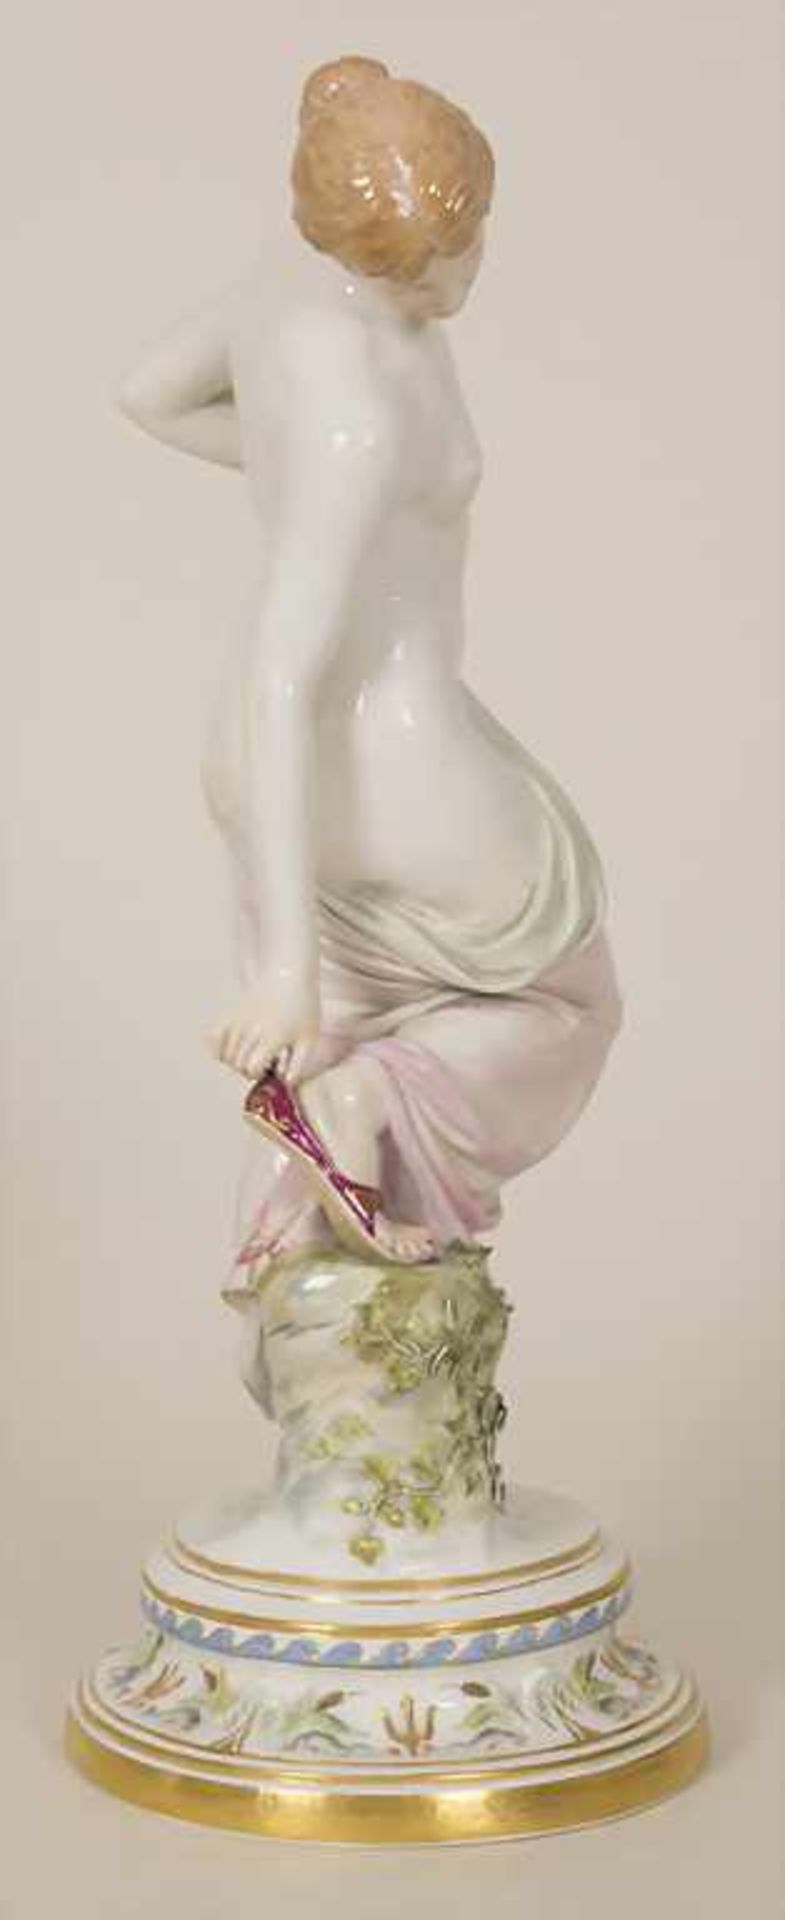 Porzellanfigur 'Nach dem Bade' / A porcelain figure 'After the bath', Robert Ockelmann (1849-1915) - Image 2 of 9